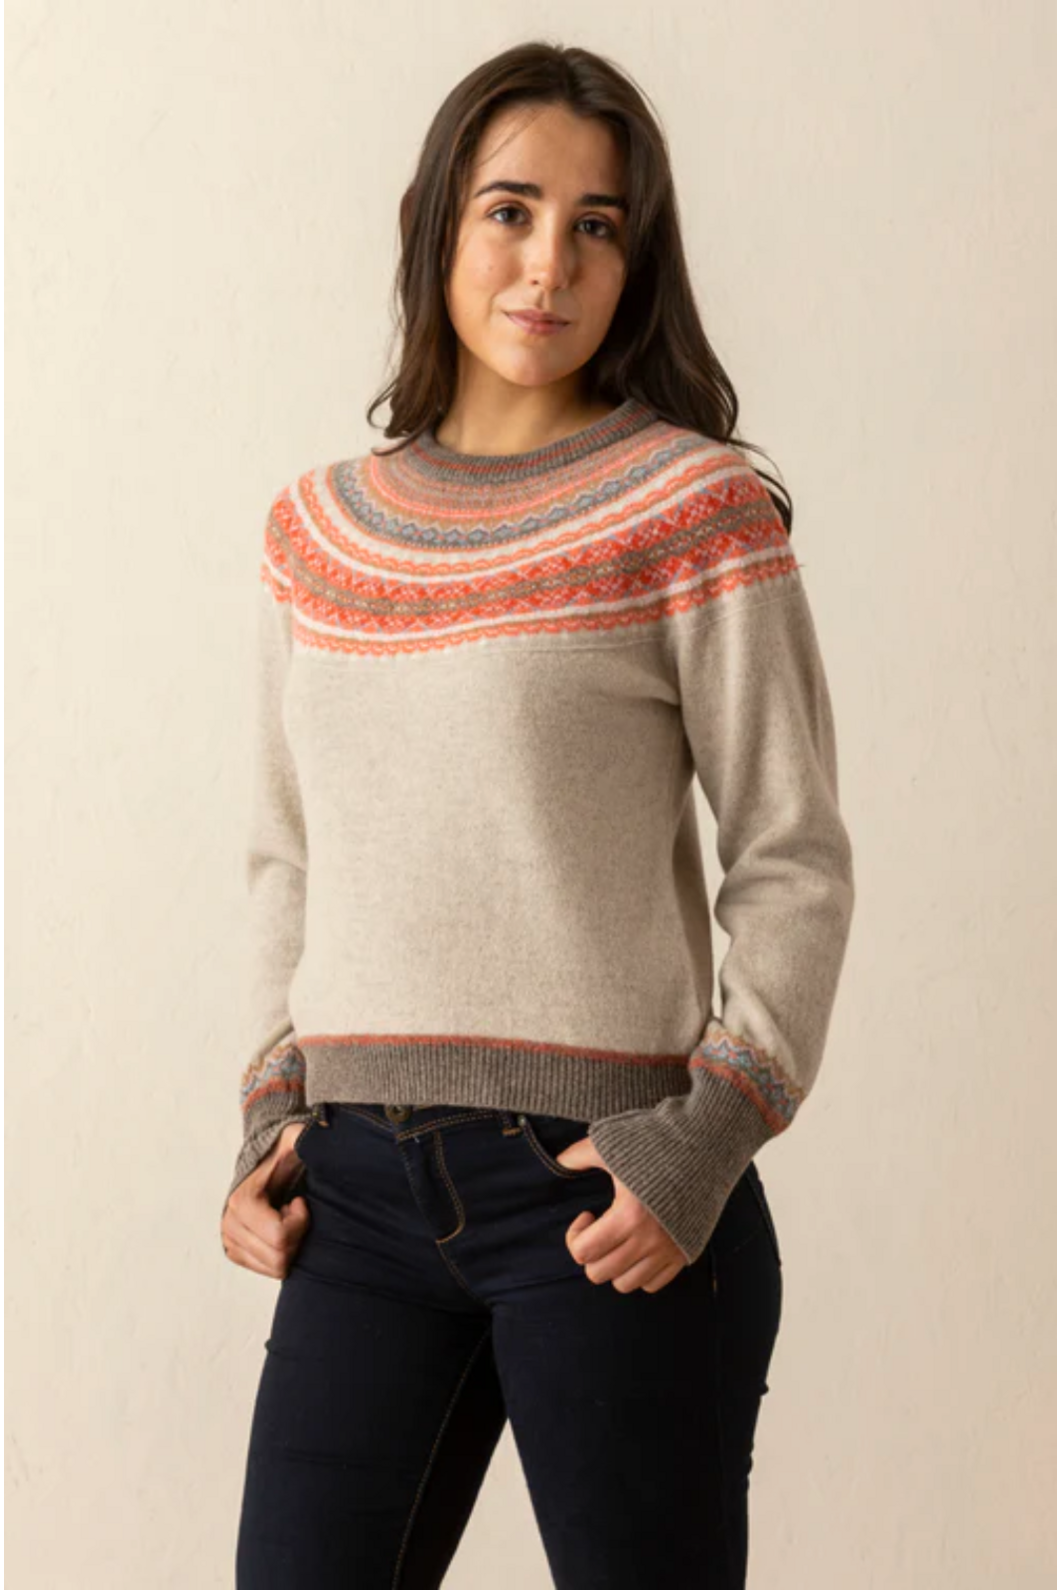 Eribe Knitwear Alpine Sweater in Hibiscus